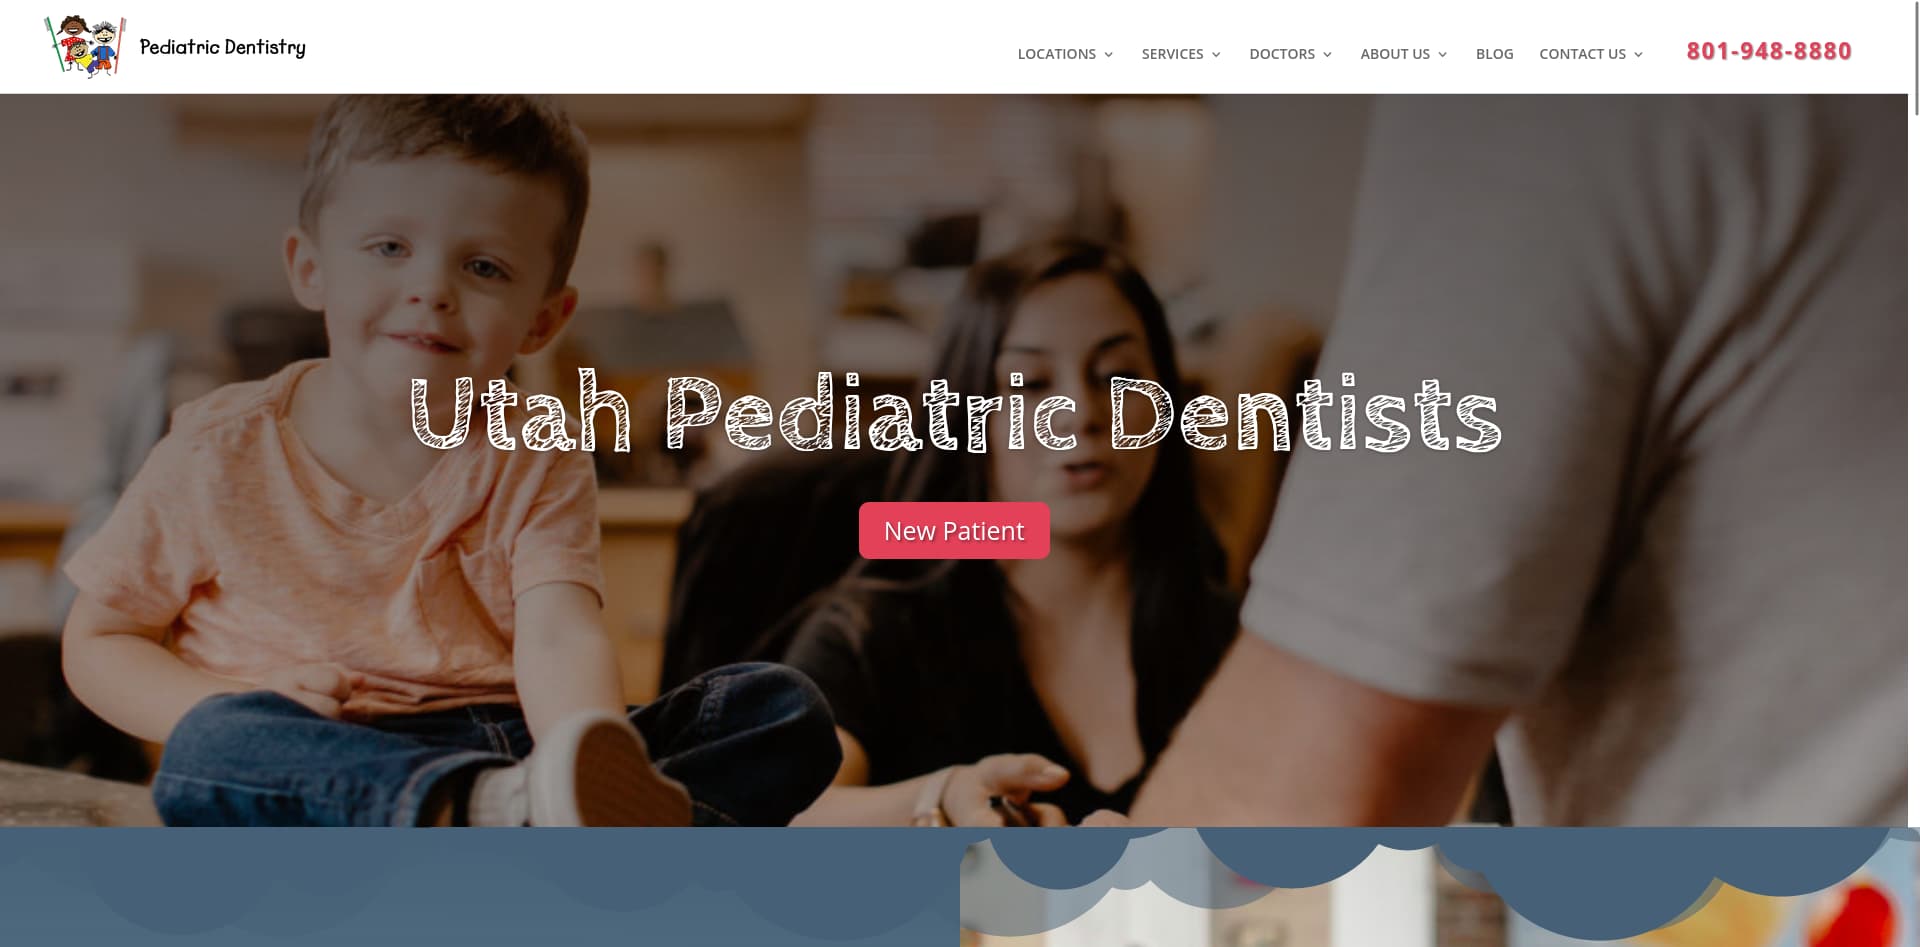 Utah Pediatric Dentistry